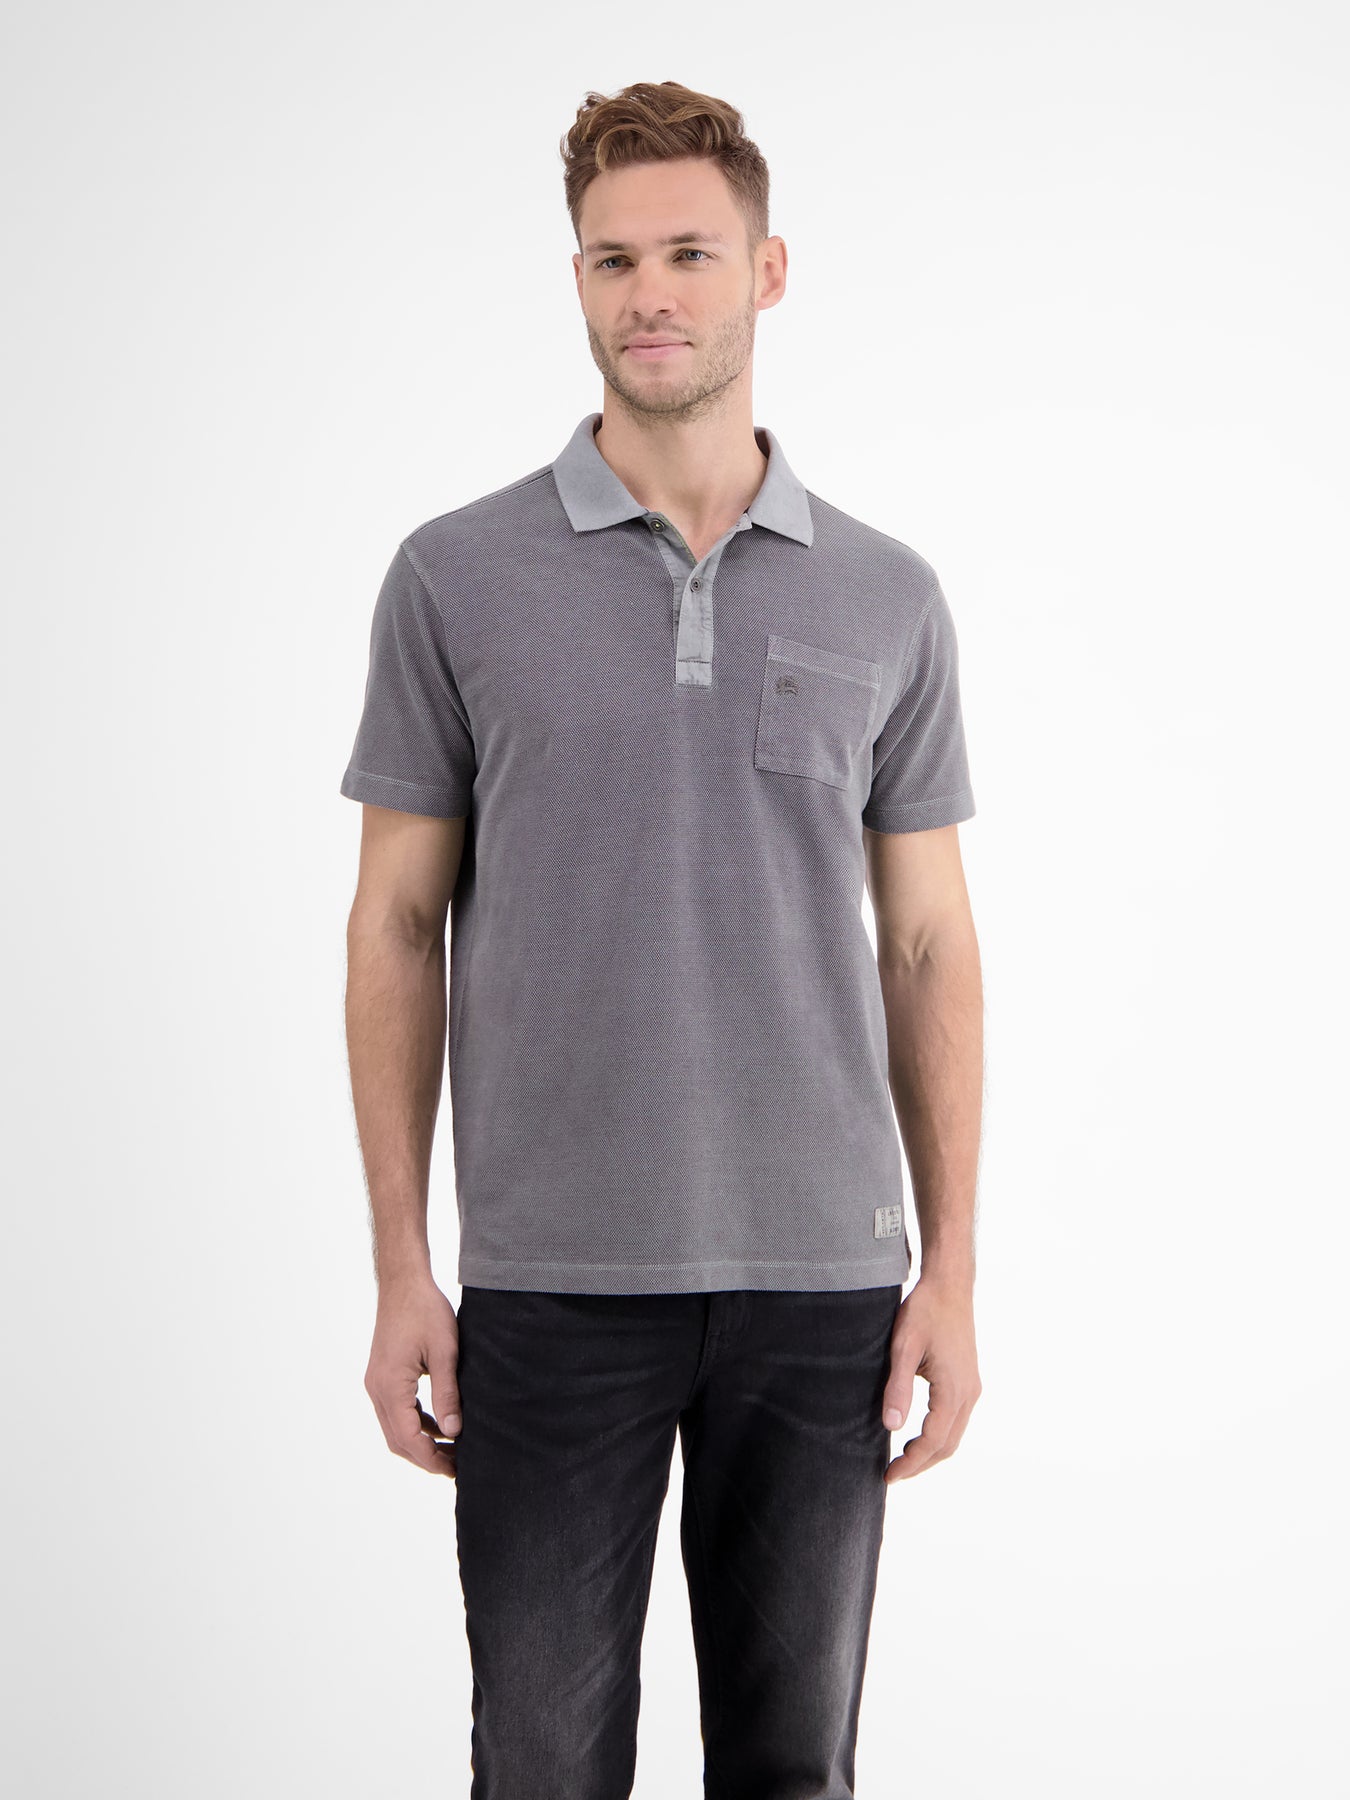 shirt Polo – SHOP LERROS piqué in two-tone